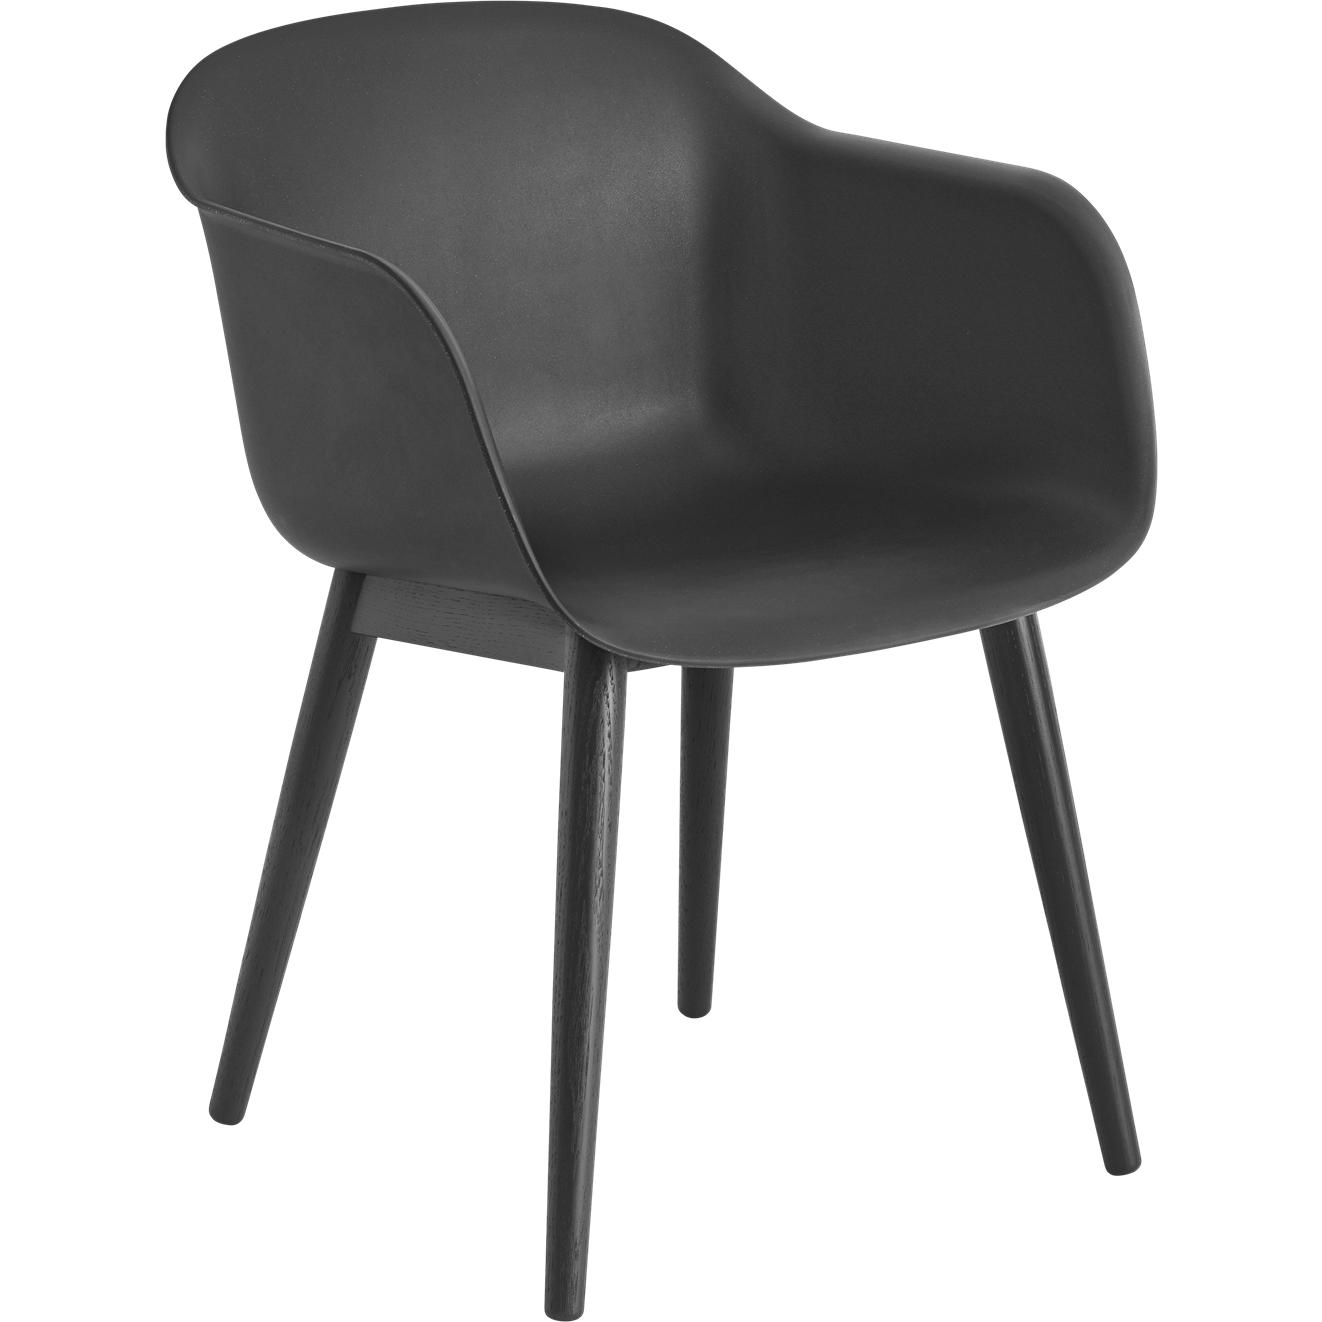 Muuto vezel fauteuil houten benen, vezelstoel, zwart